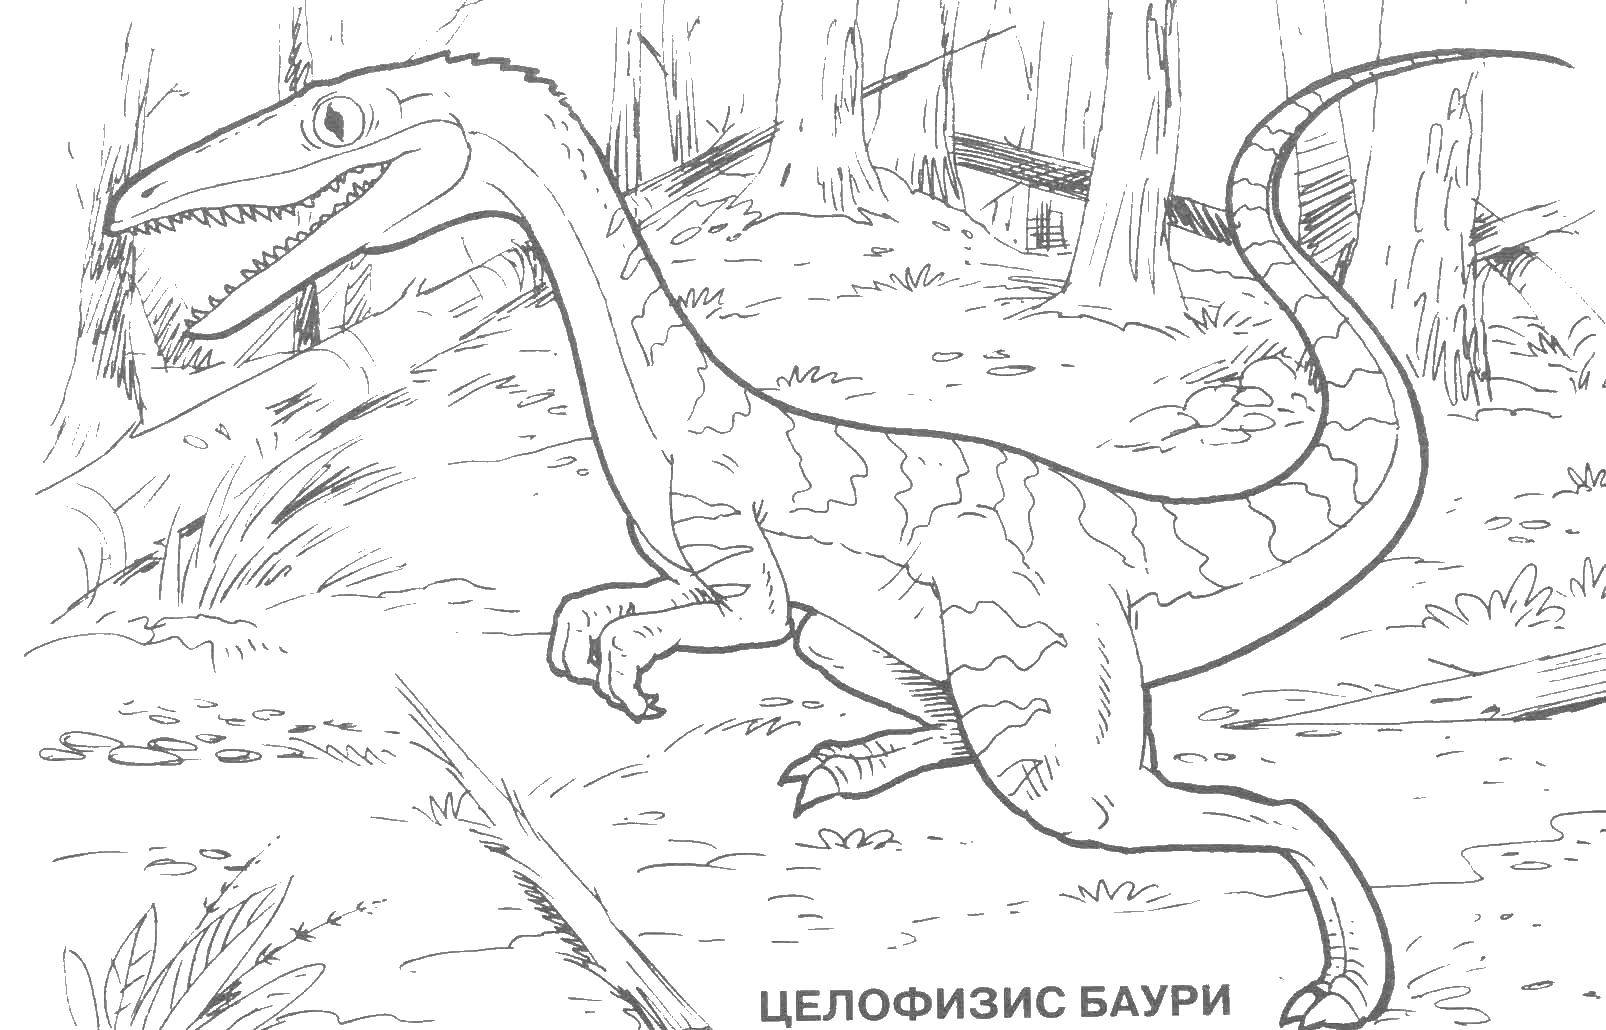 Название: Раскраска Целофизис баури. Категория: парк юрского периода. Теги: динозавр, клыки, хвост.